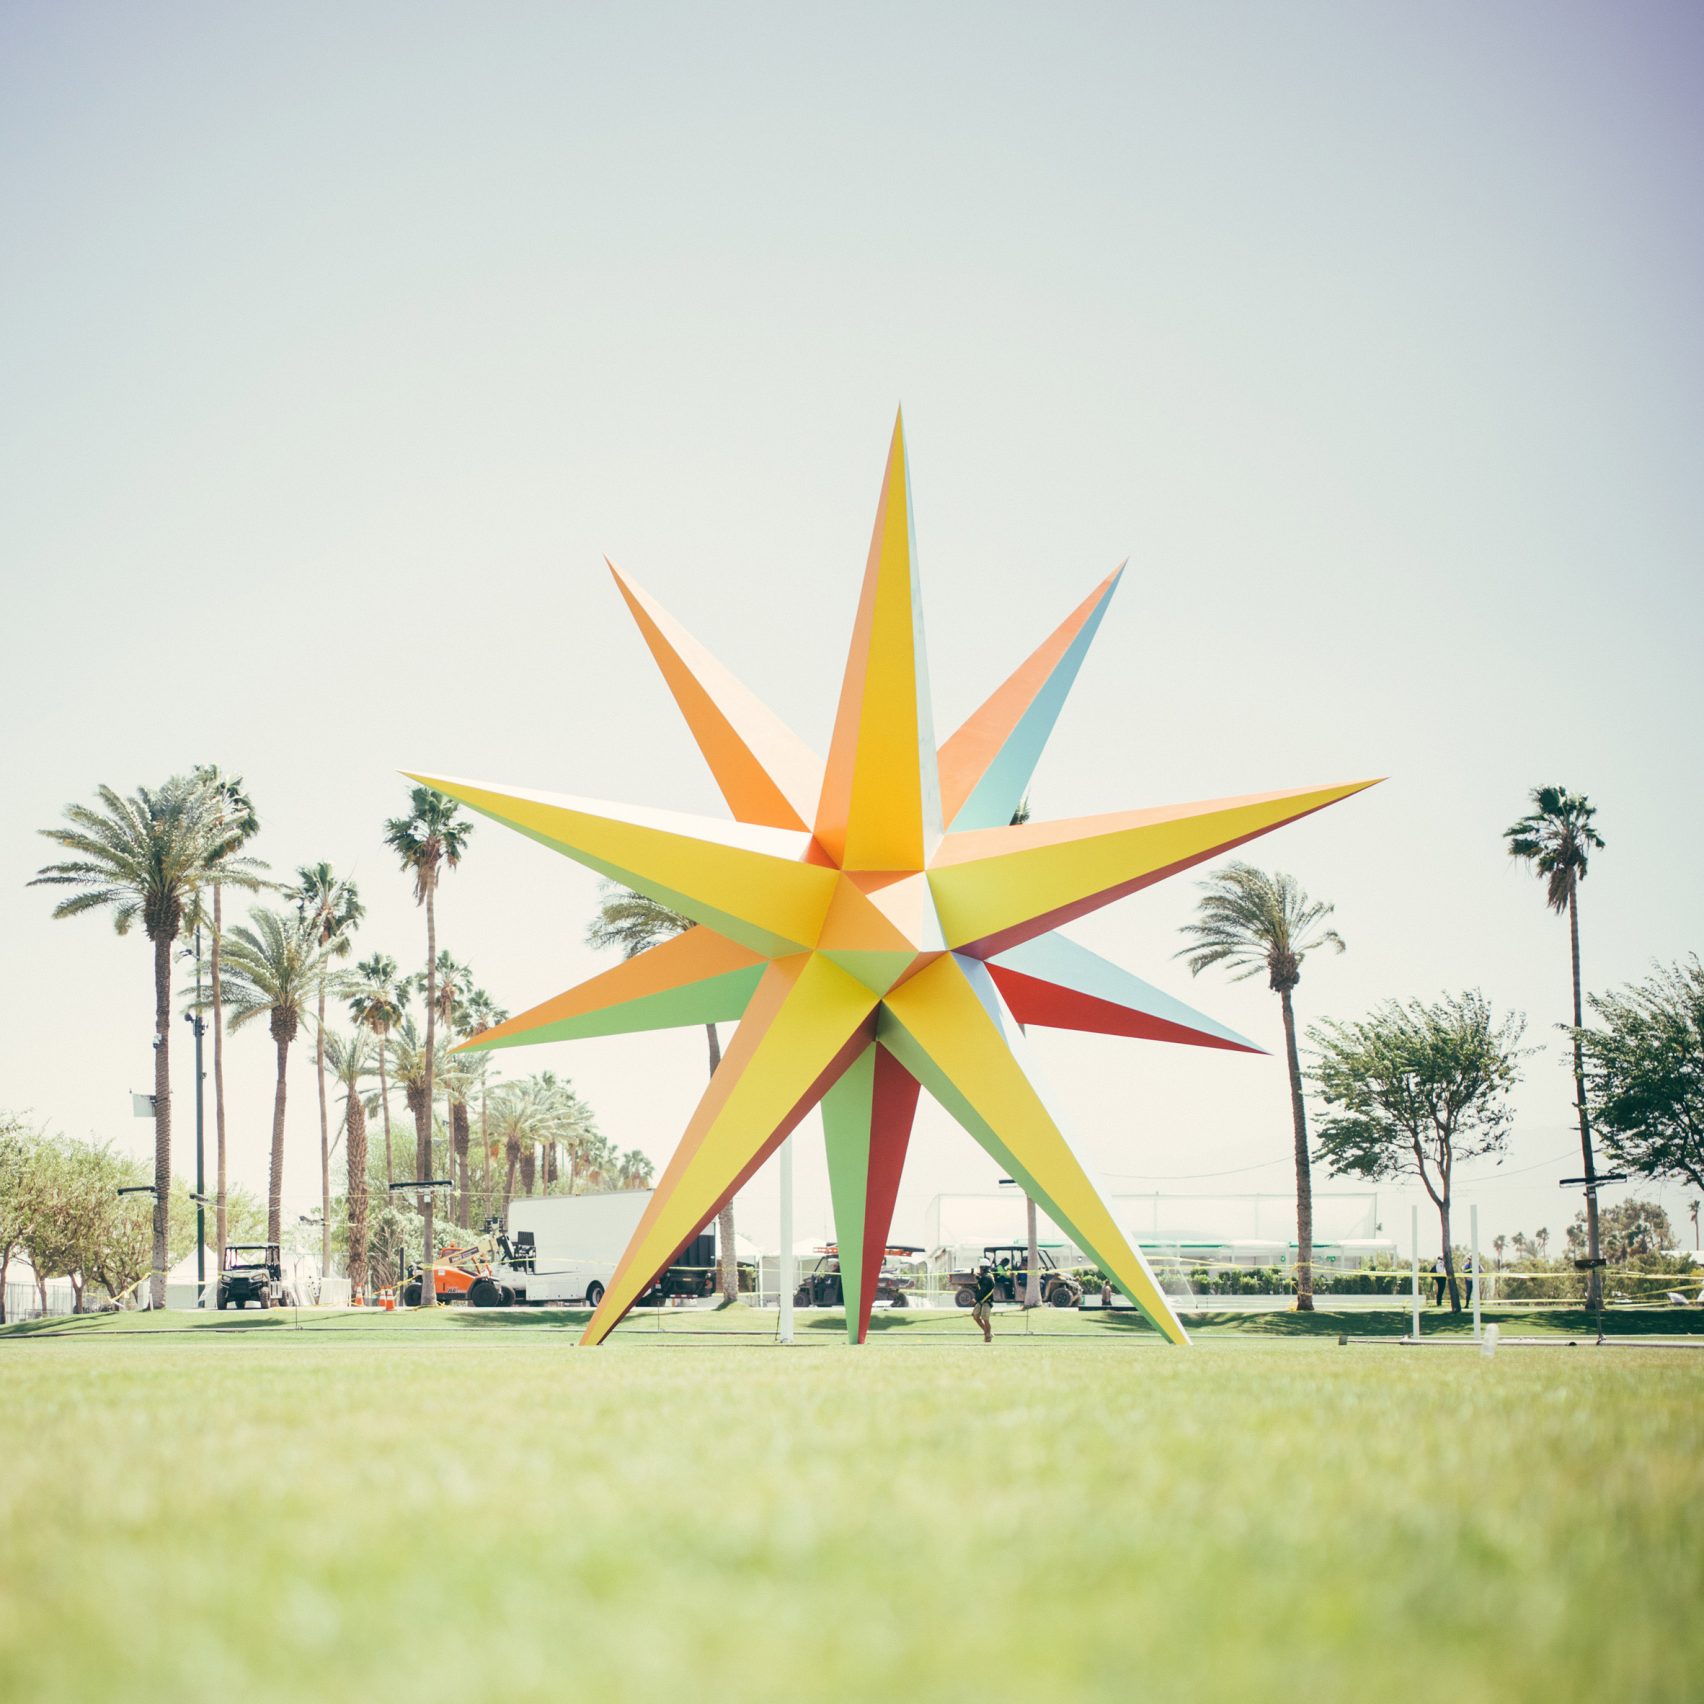 Wielokolorowa gwiazda na trawie, w tle palmy.